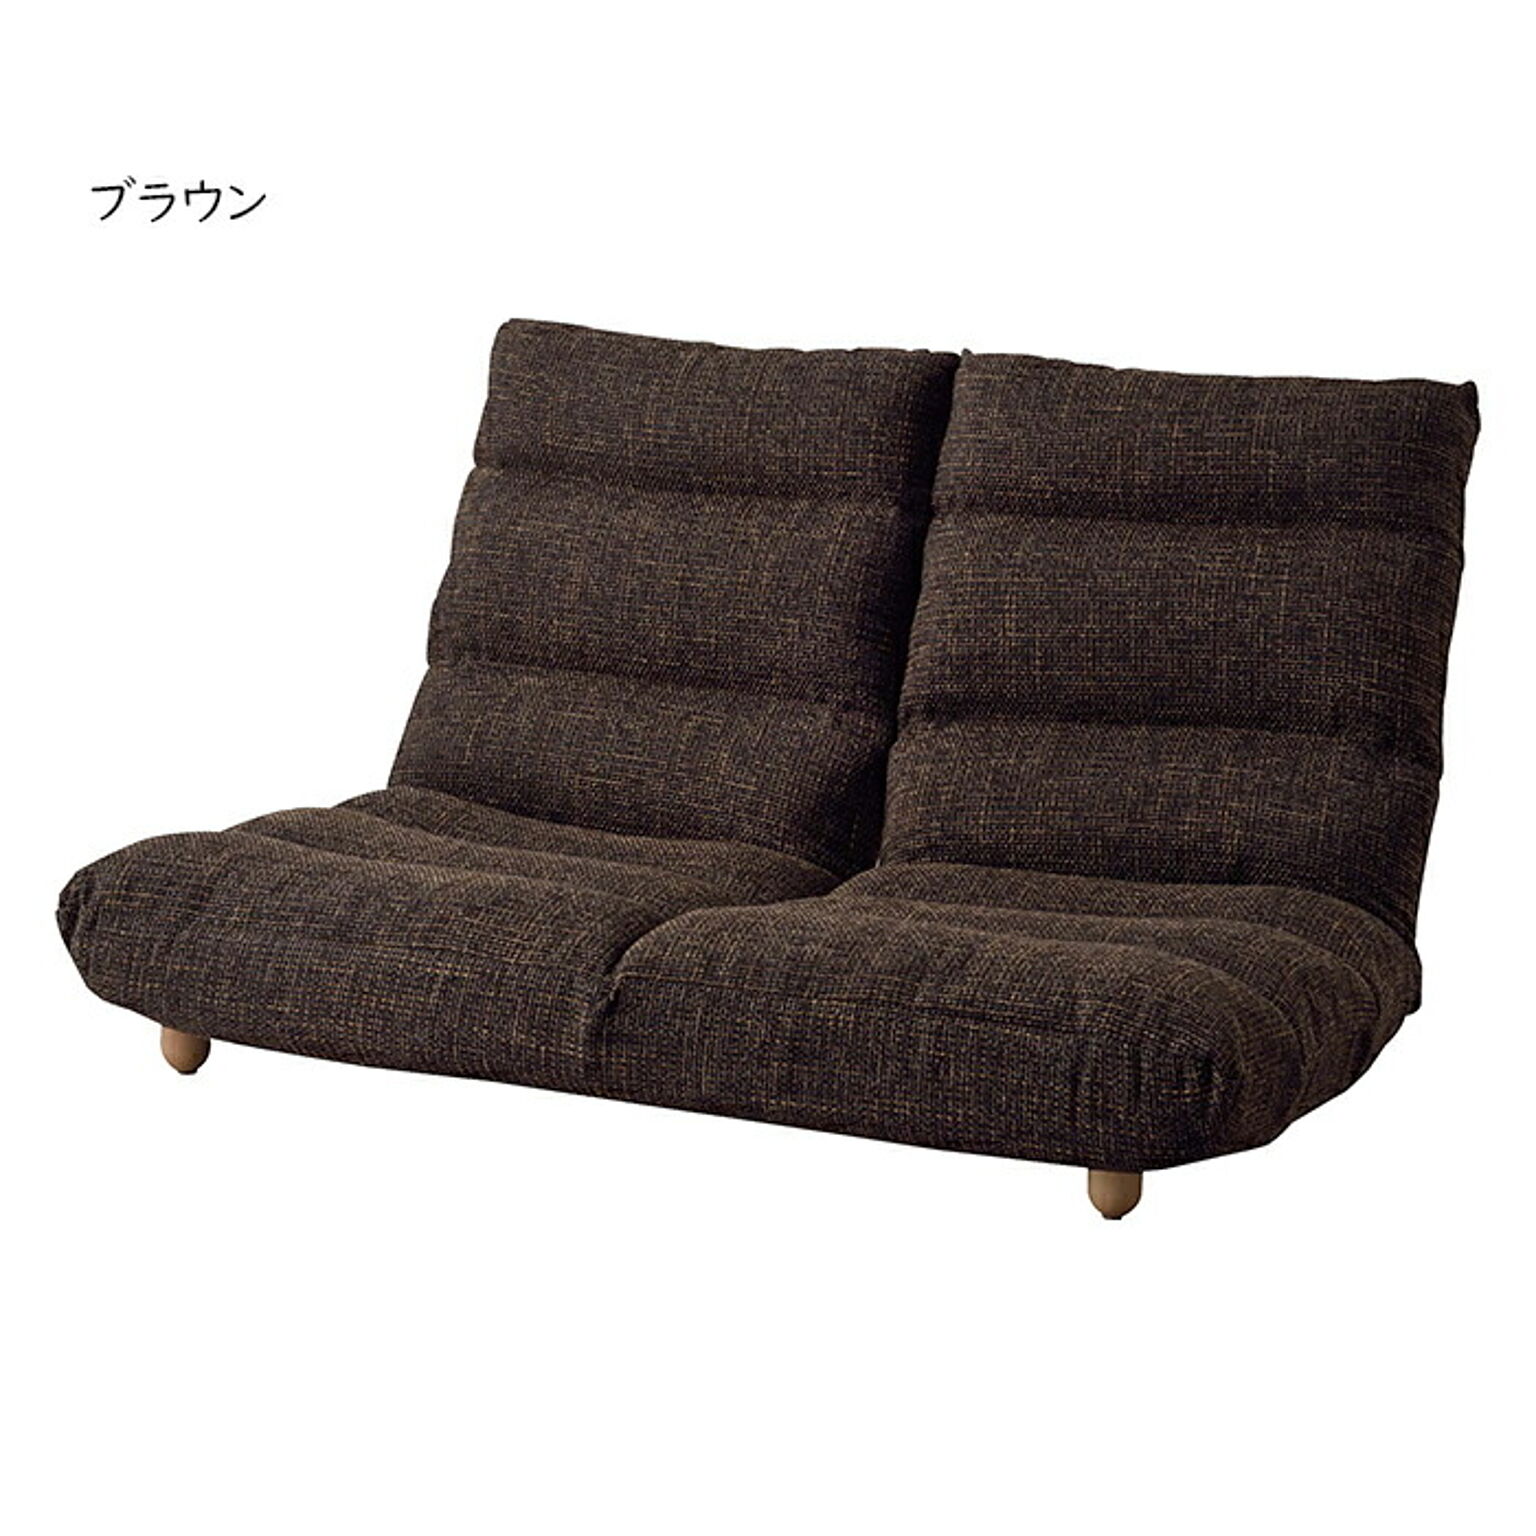 カリモク ソファ/ WU47モデル 平織布張 2人掛椅子ロング 【COM オーク